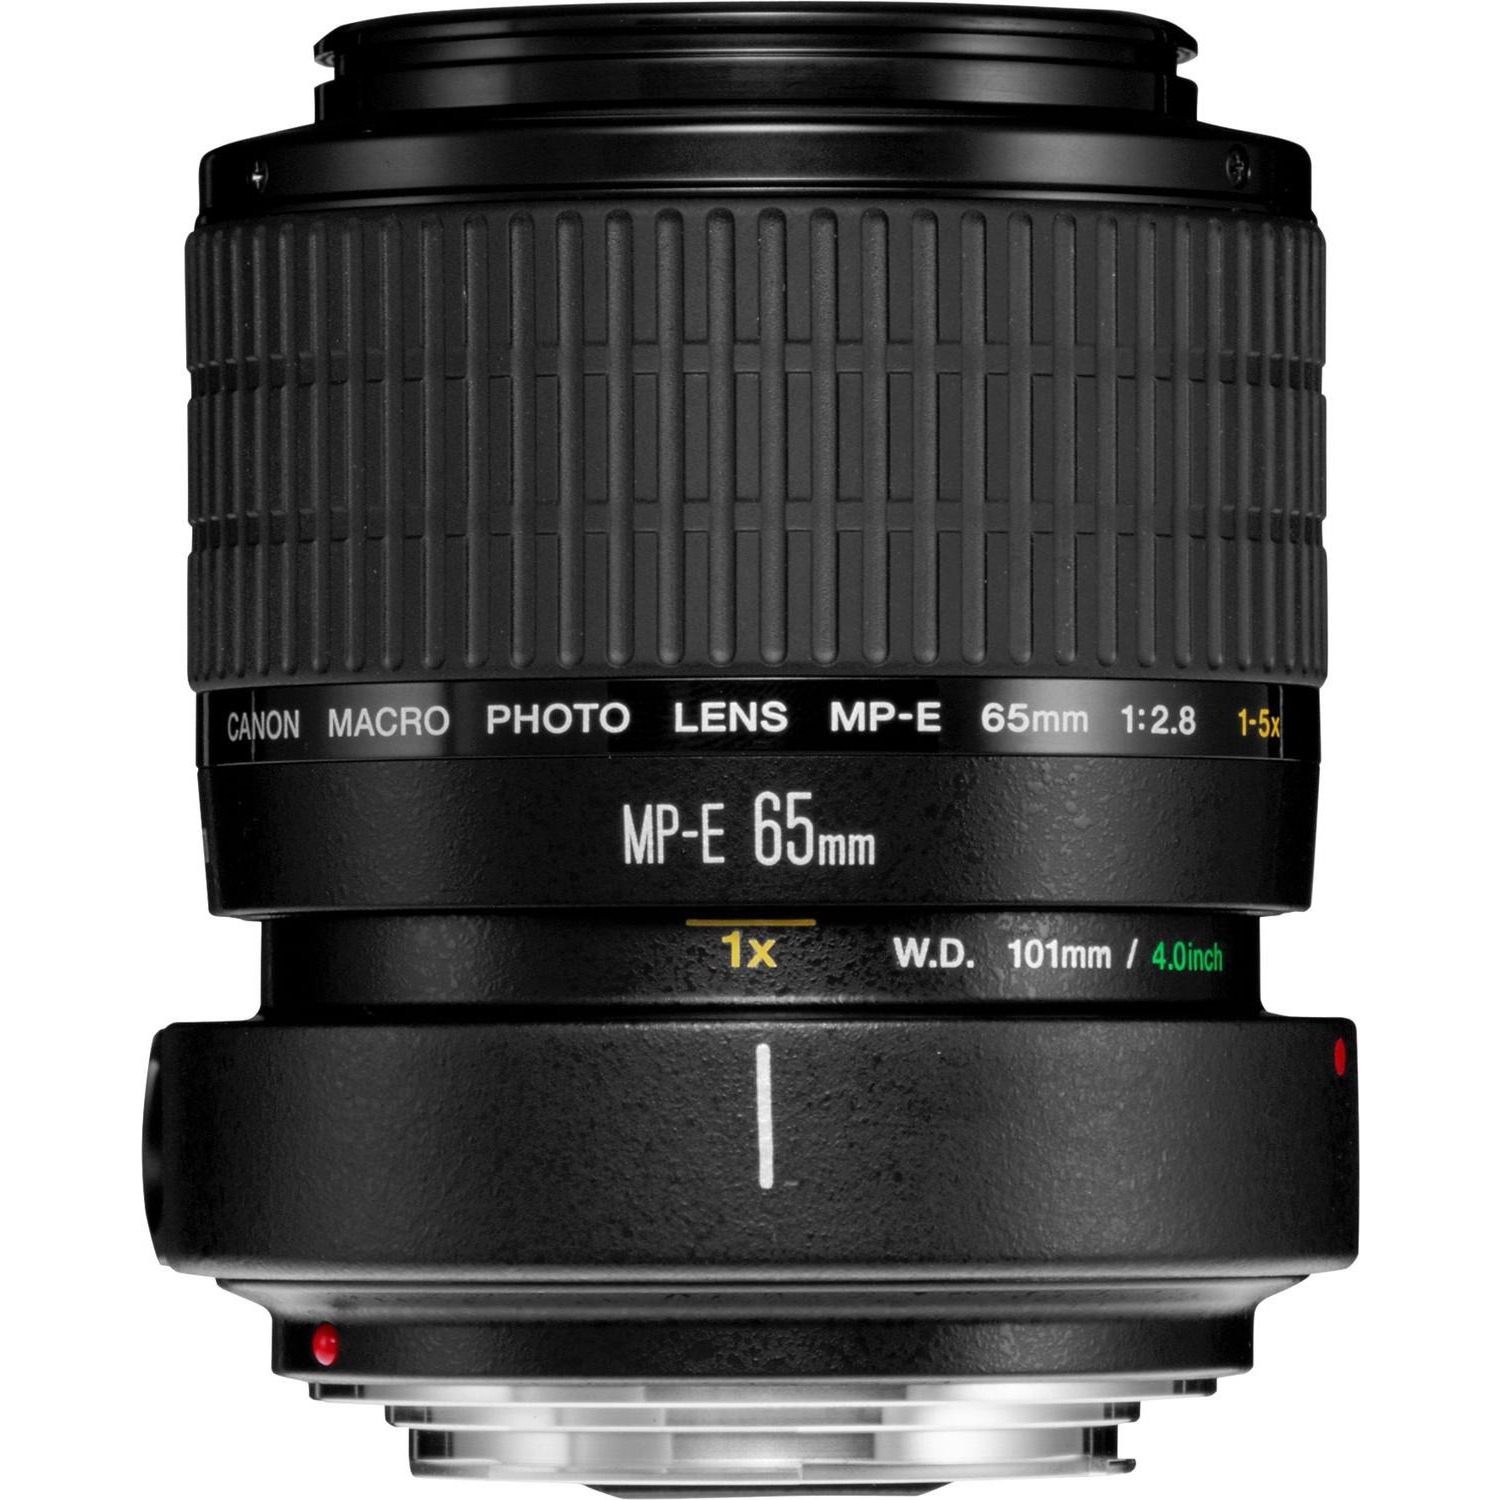 Immagine per Obiettivo Canon MP-E 65mm F2.8 1-5X macro -       ingrandimenti fino a 5X da DIMOStore